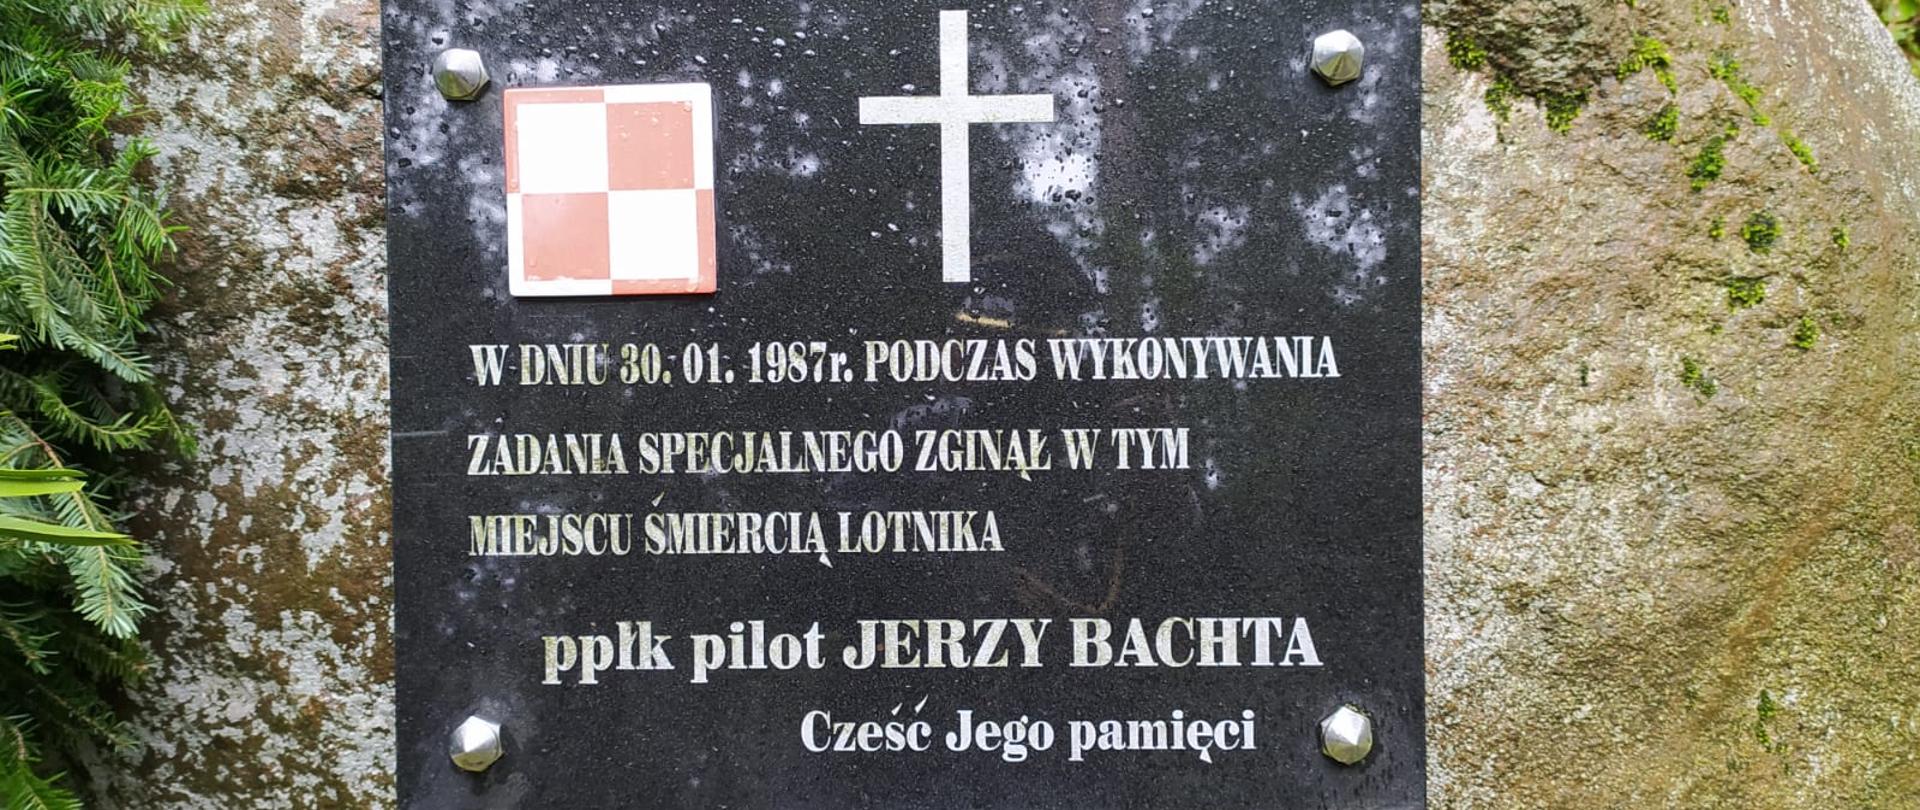 Pamięci Ś.P. Ppłk Pilota Jerzego Bachty